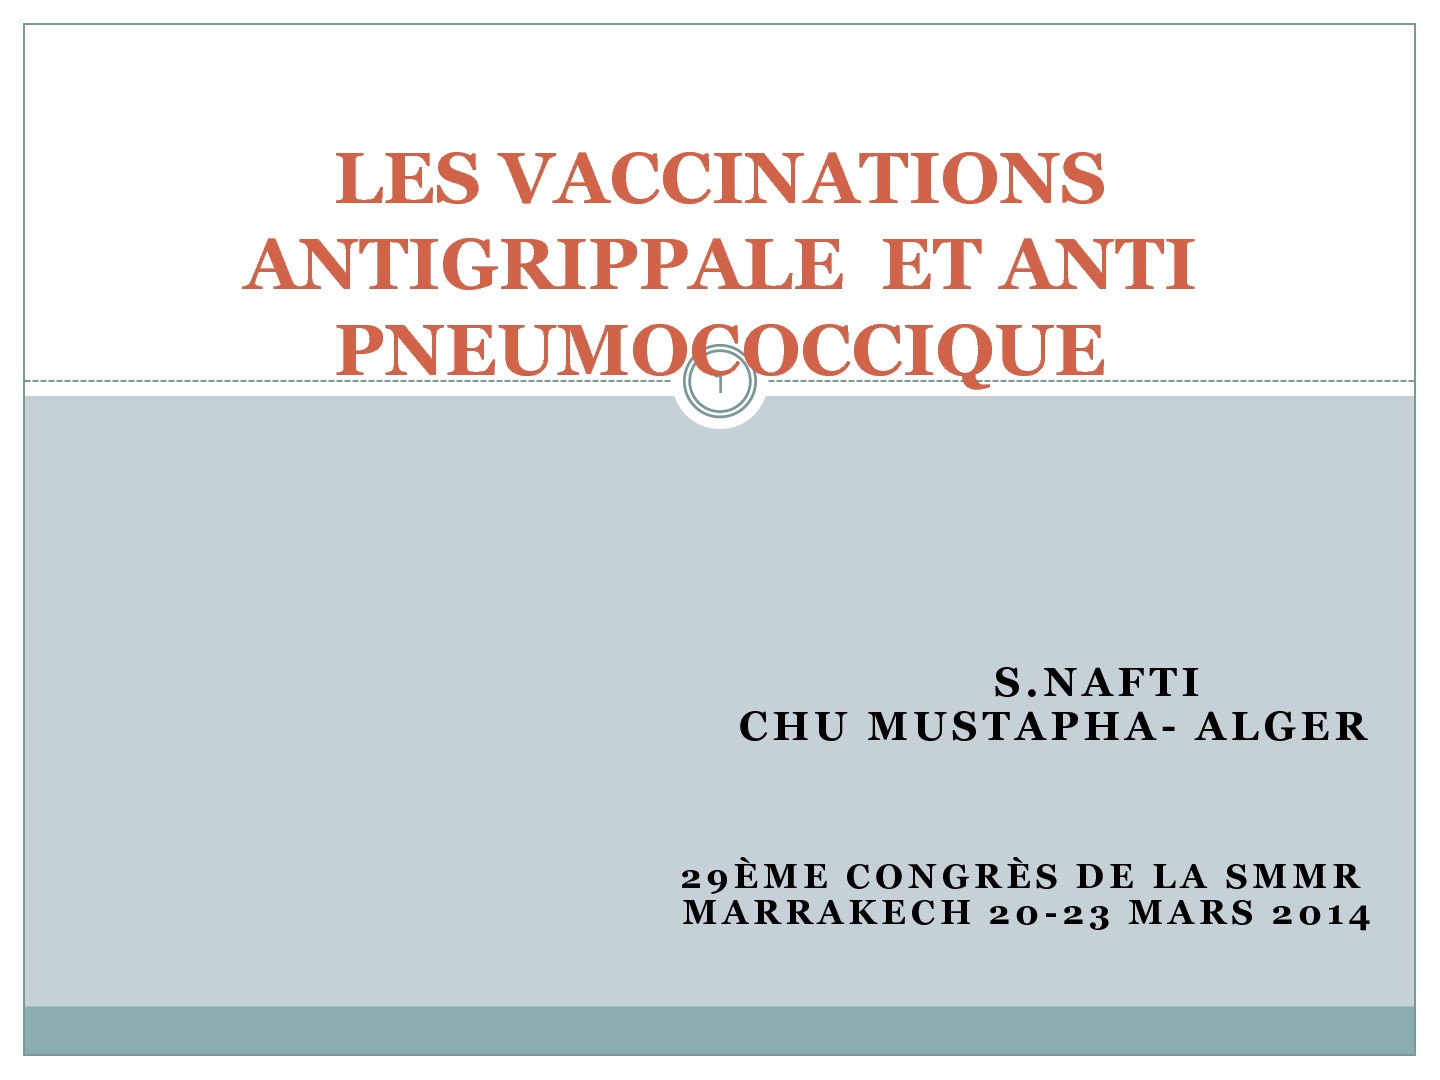 Les vaccinations anti-grippales et anti-pneumococciques. Salim Nafti